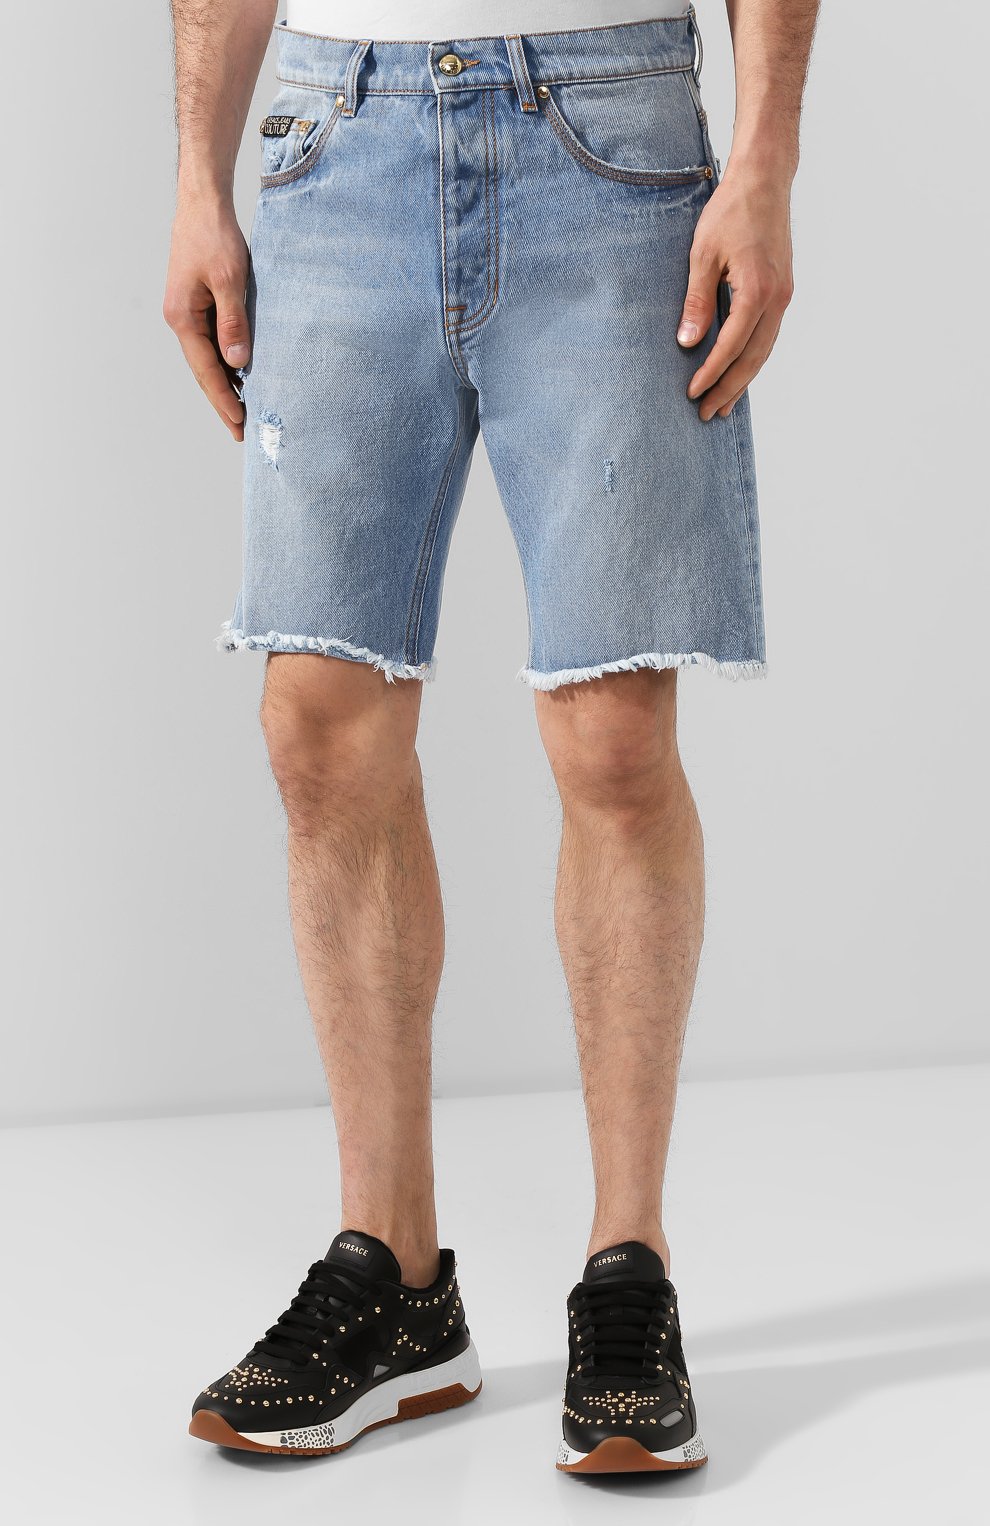 С чем носить джинсовые мужские шорты? - блог FREEVER